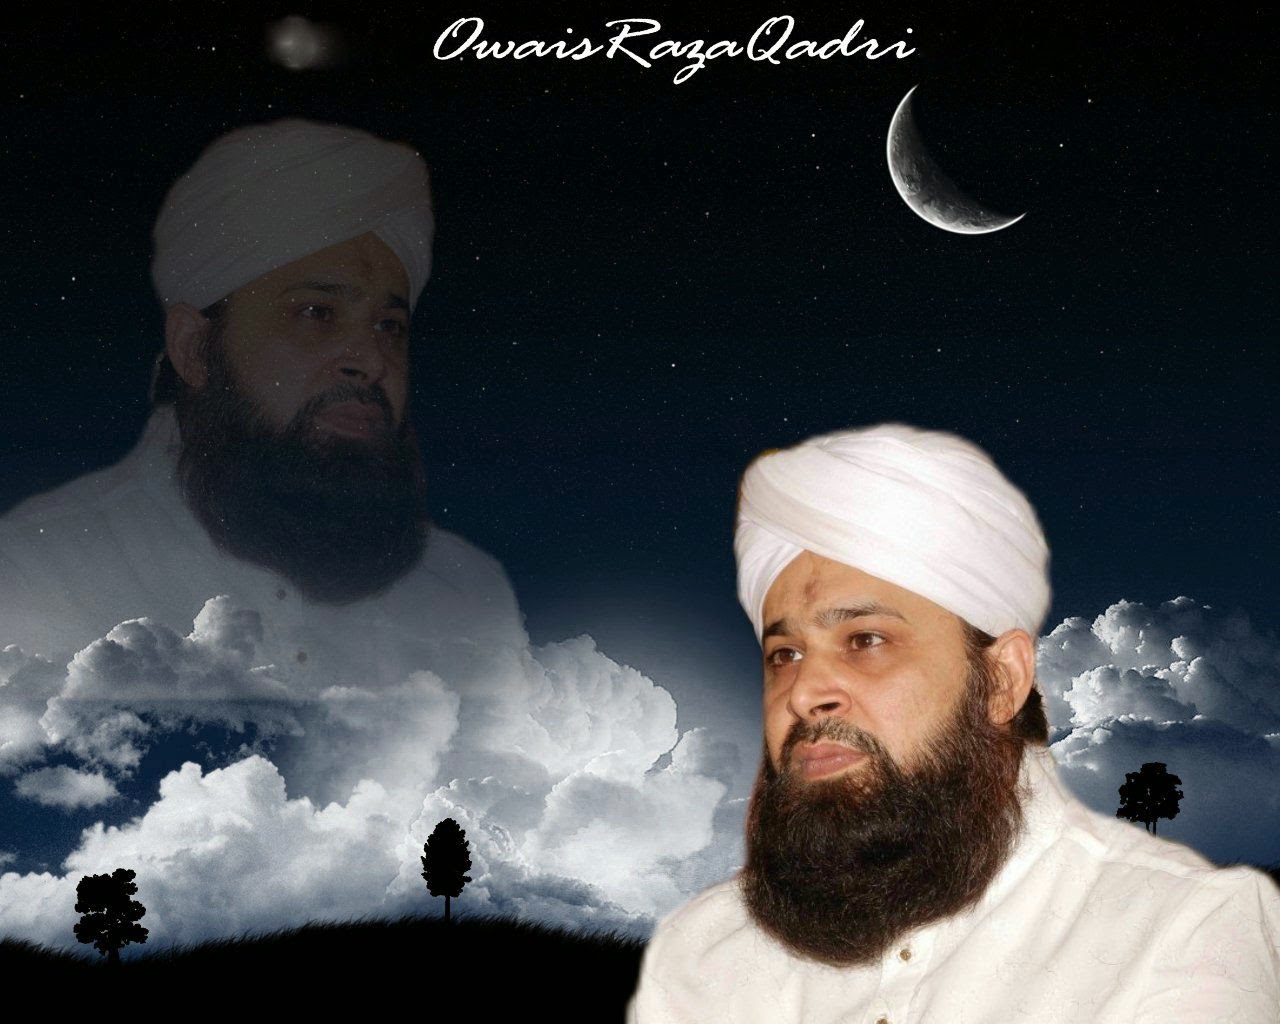 99 Names Of Allah Naat Owais Qadri Download - mixecareer